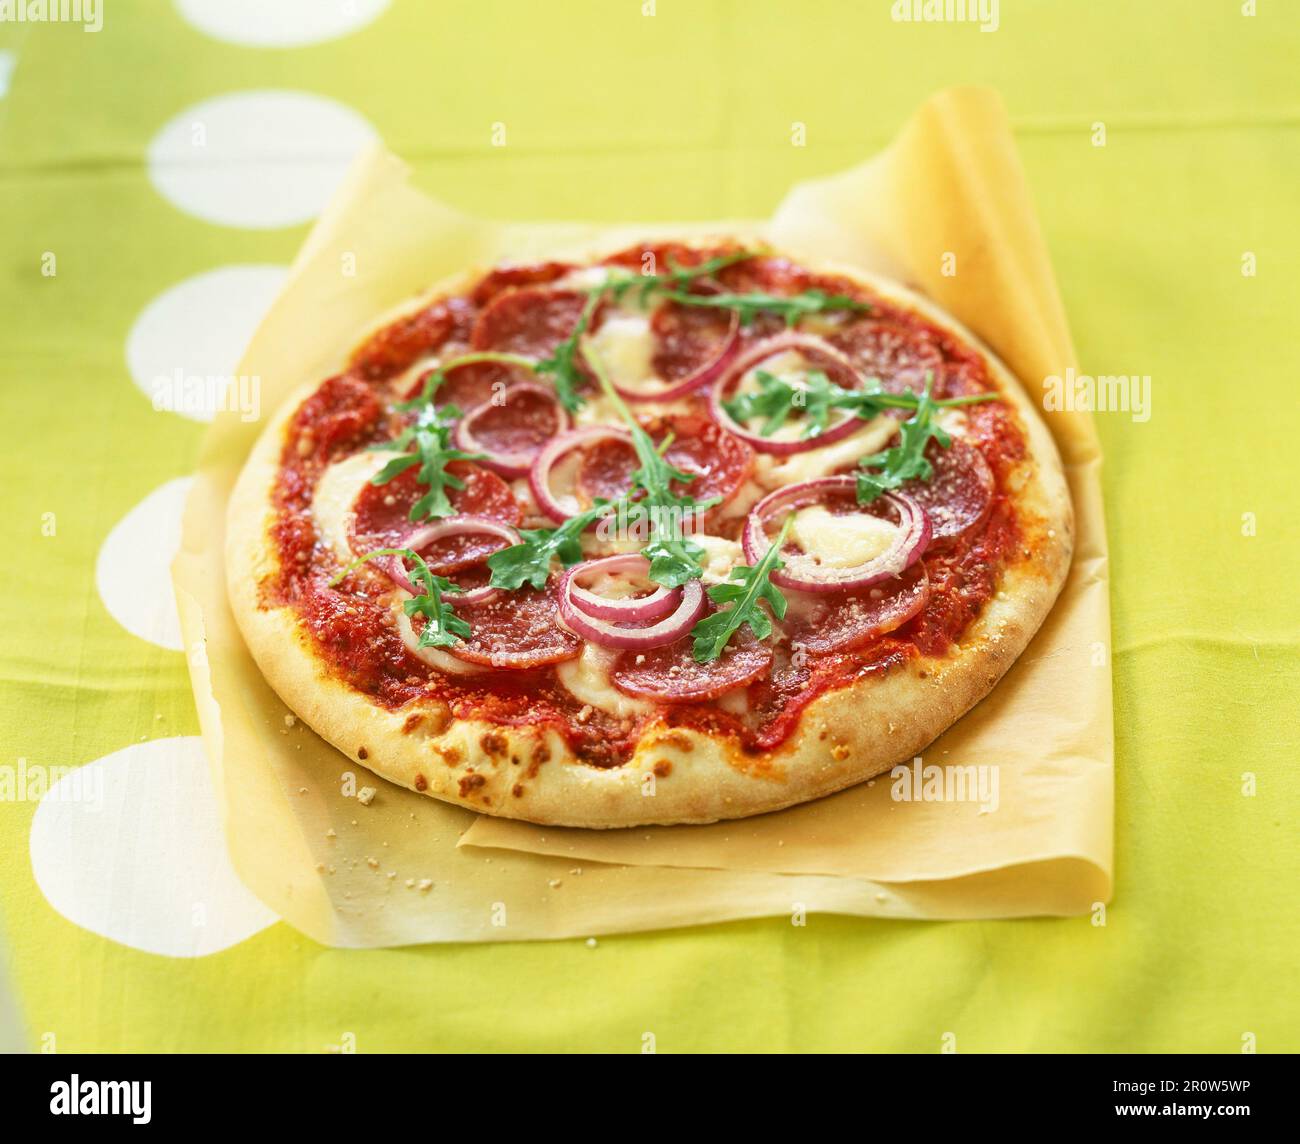 Pepperoni and mozzarella pizza Stock Photo